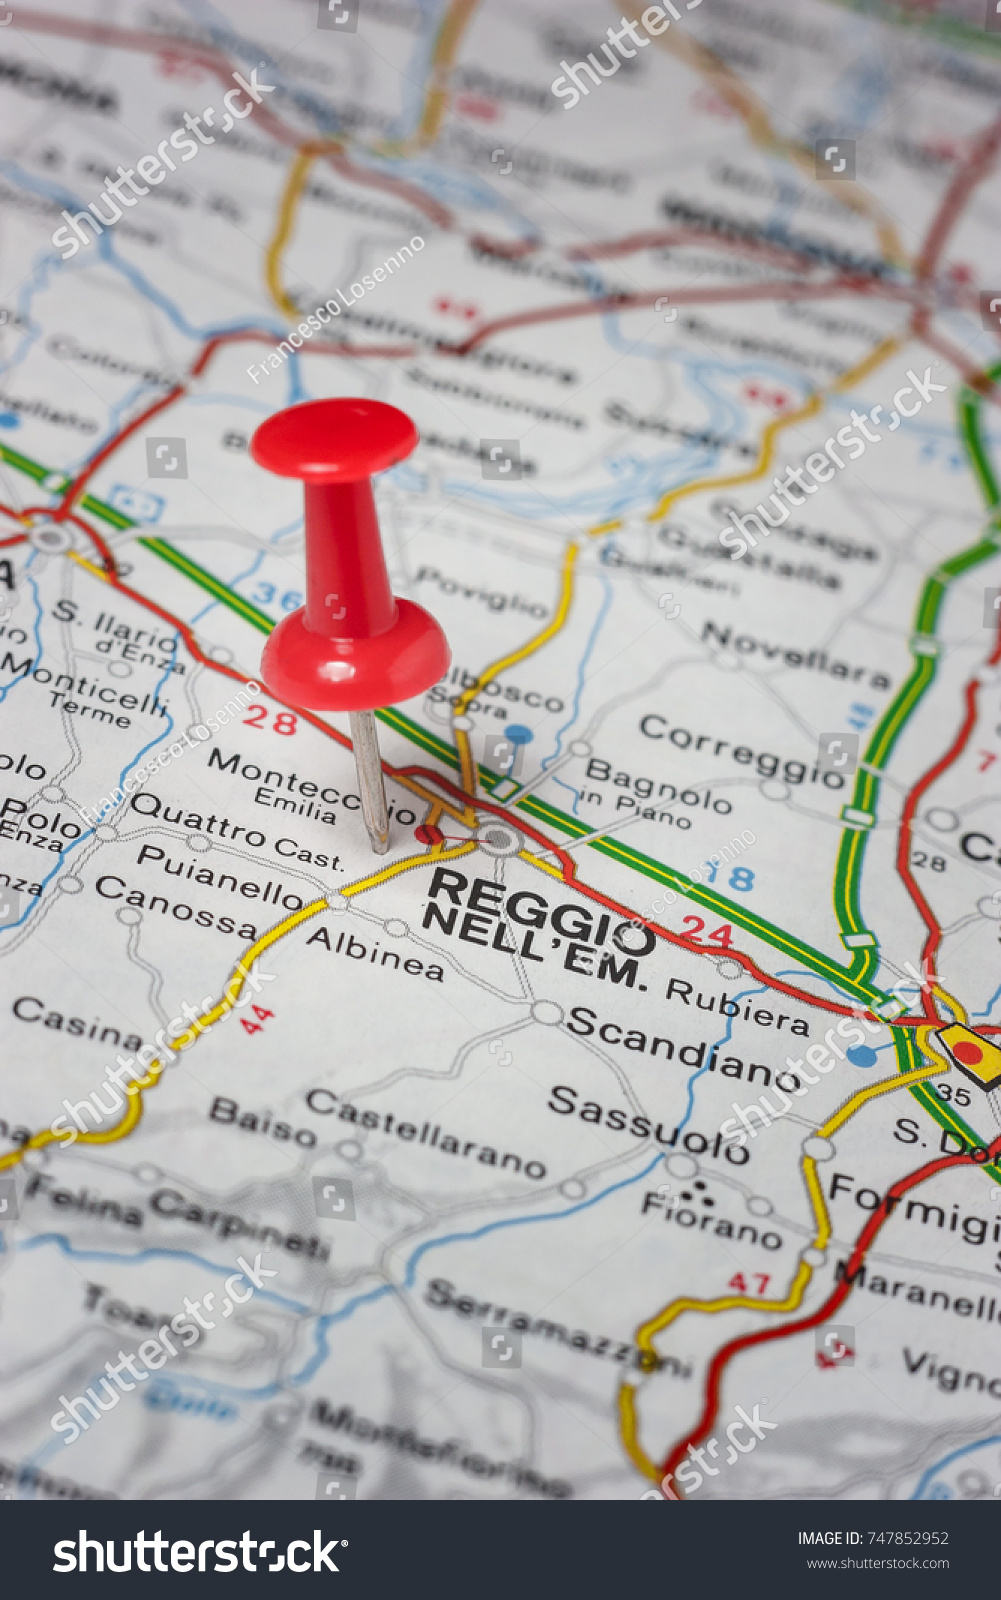 Reggio Emilia Map Images Stock Photos Vectors Shutterstock